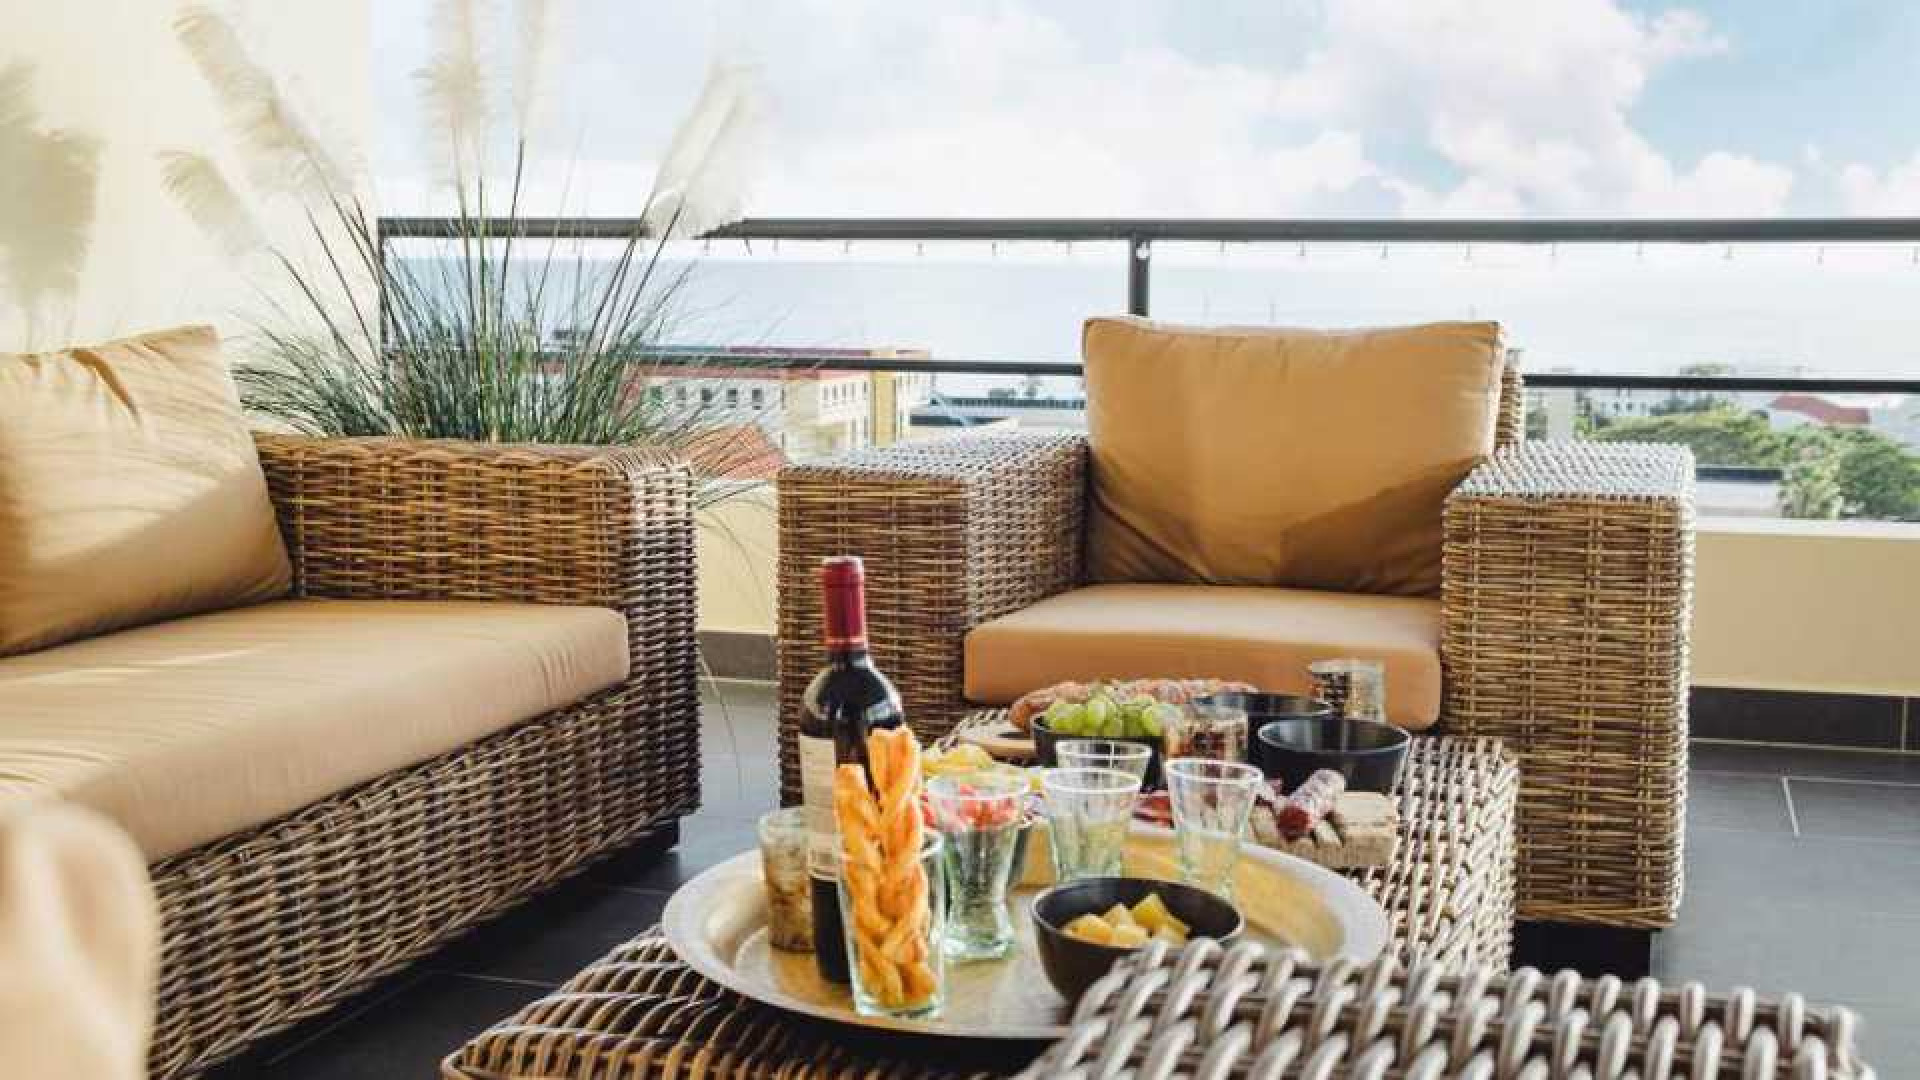 Dirk Zeelenberg koopt op Curacao penthouse met spectaculair uitzicht. Zie foto's